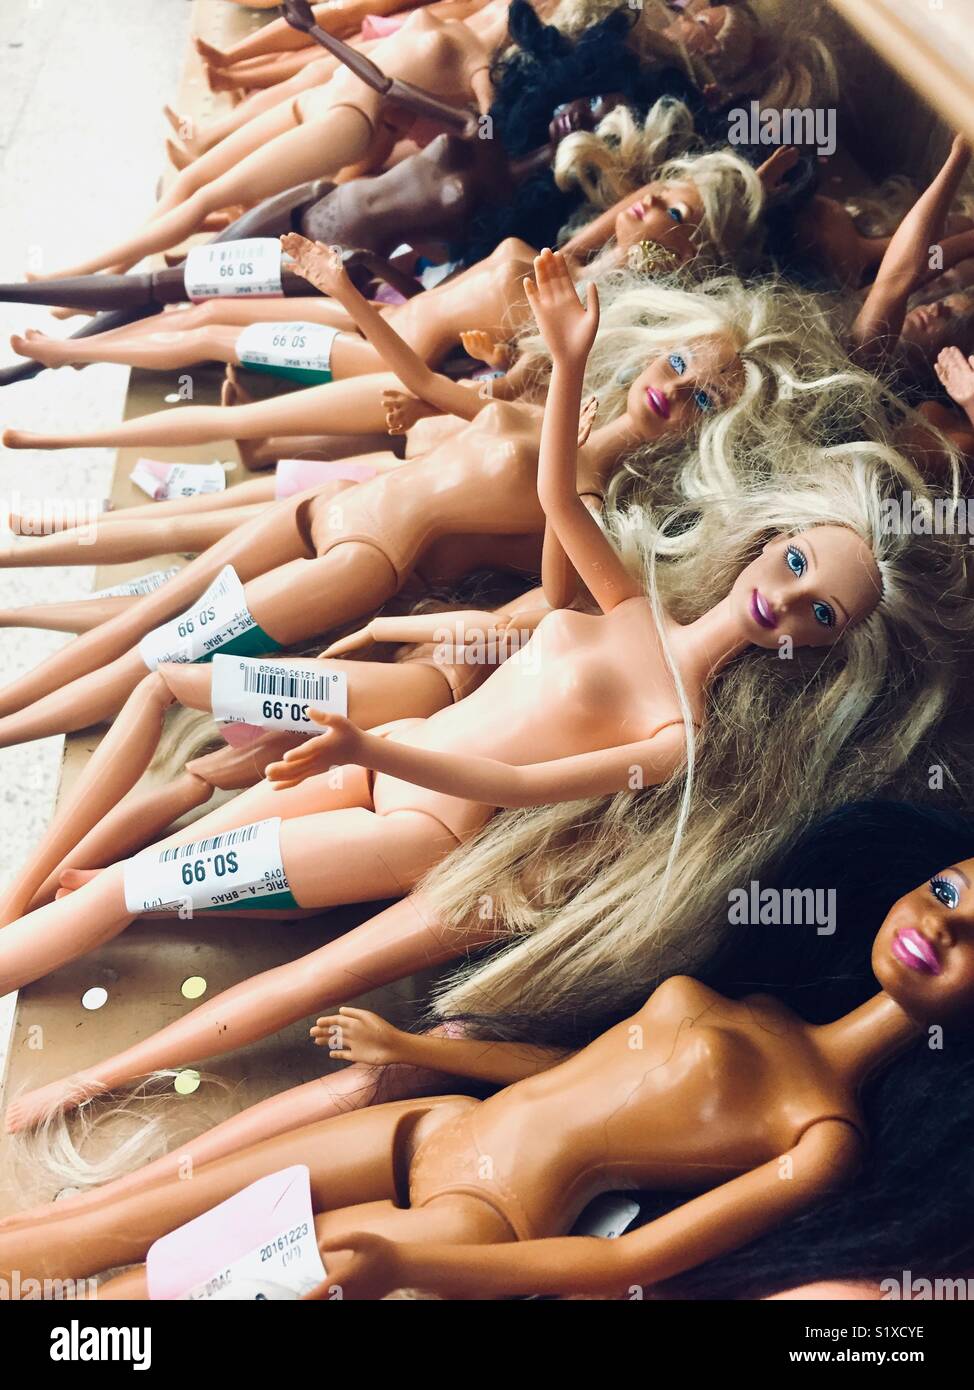 Benutzt und weggeworfen werden Frauen Puppen liegen nackt in einem Stapel  Stockfotografie - Alamy